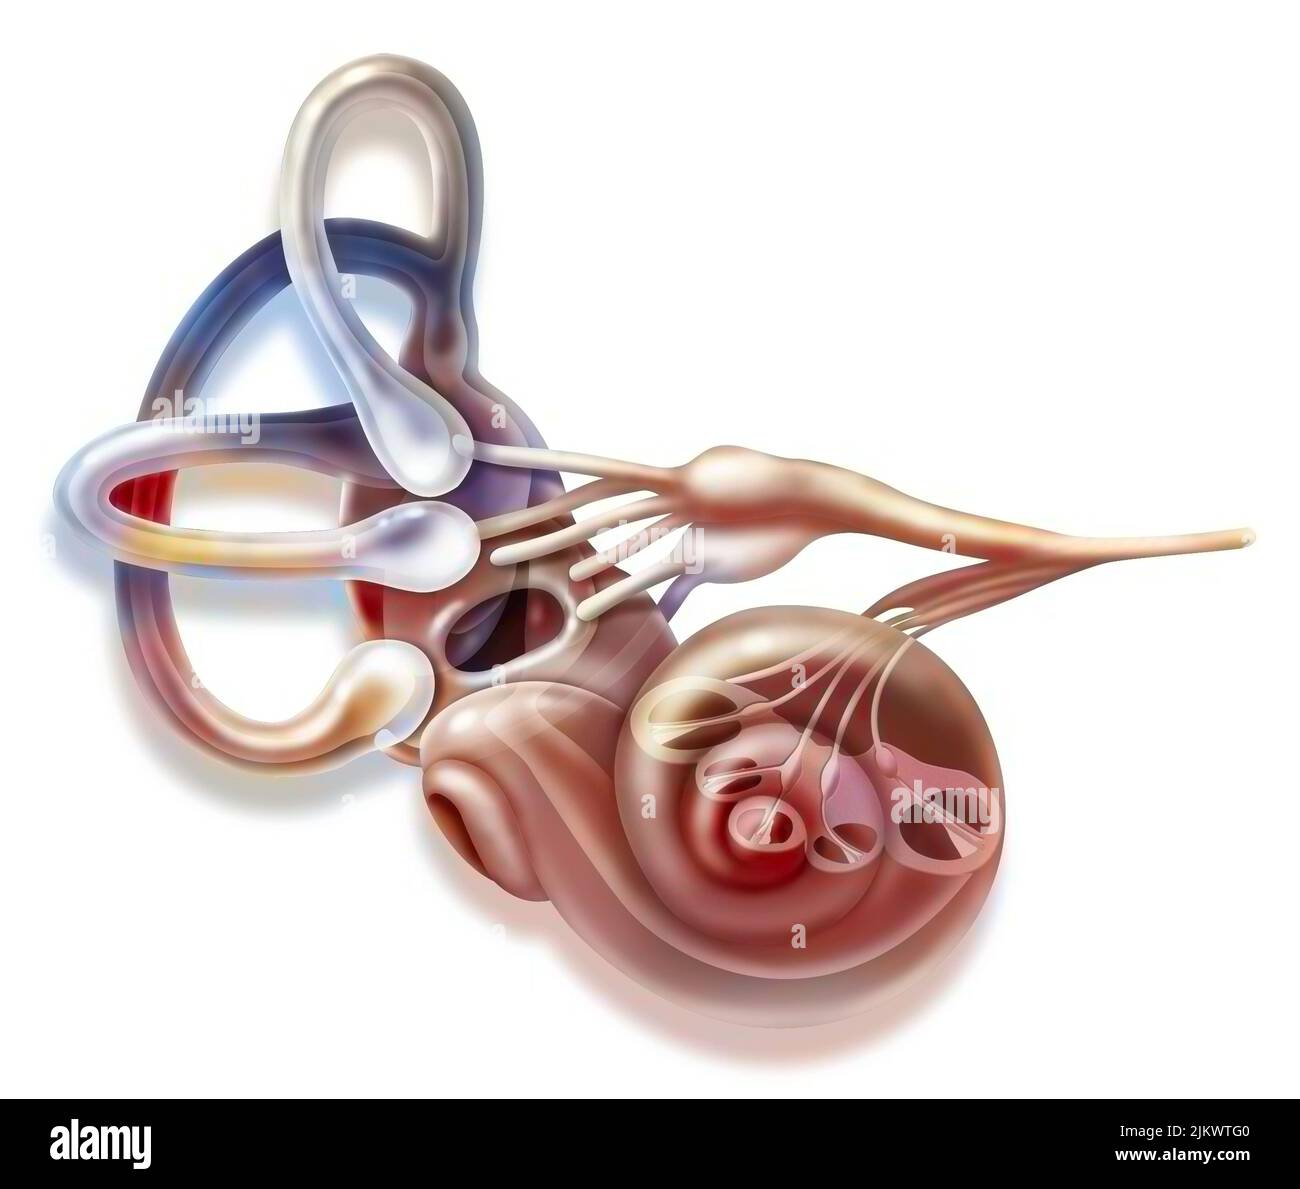 Oído interno y aparato vestibular con canales semicirculares, mácula. Foto de stock